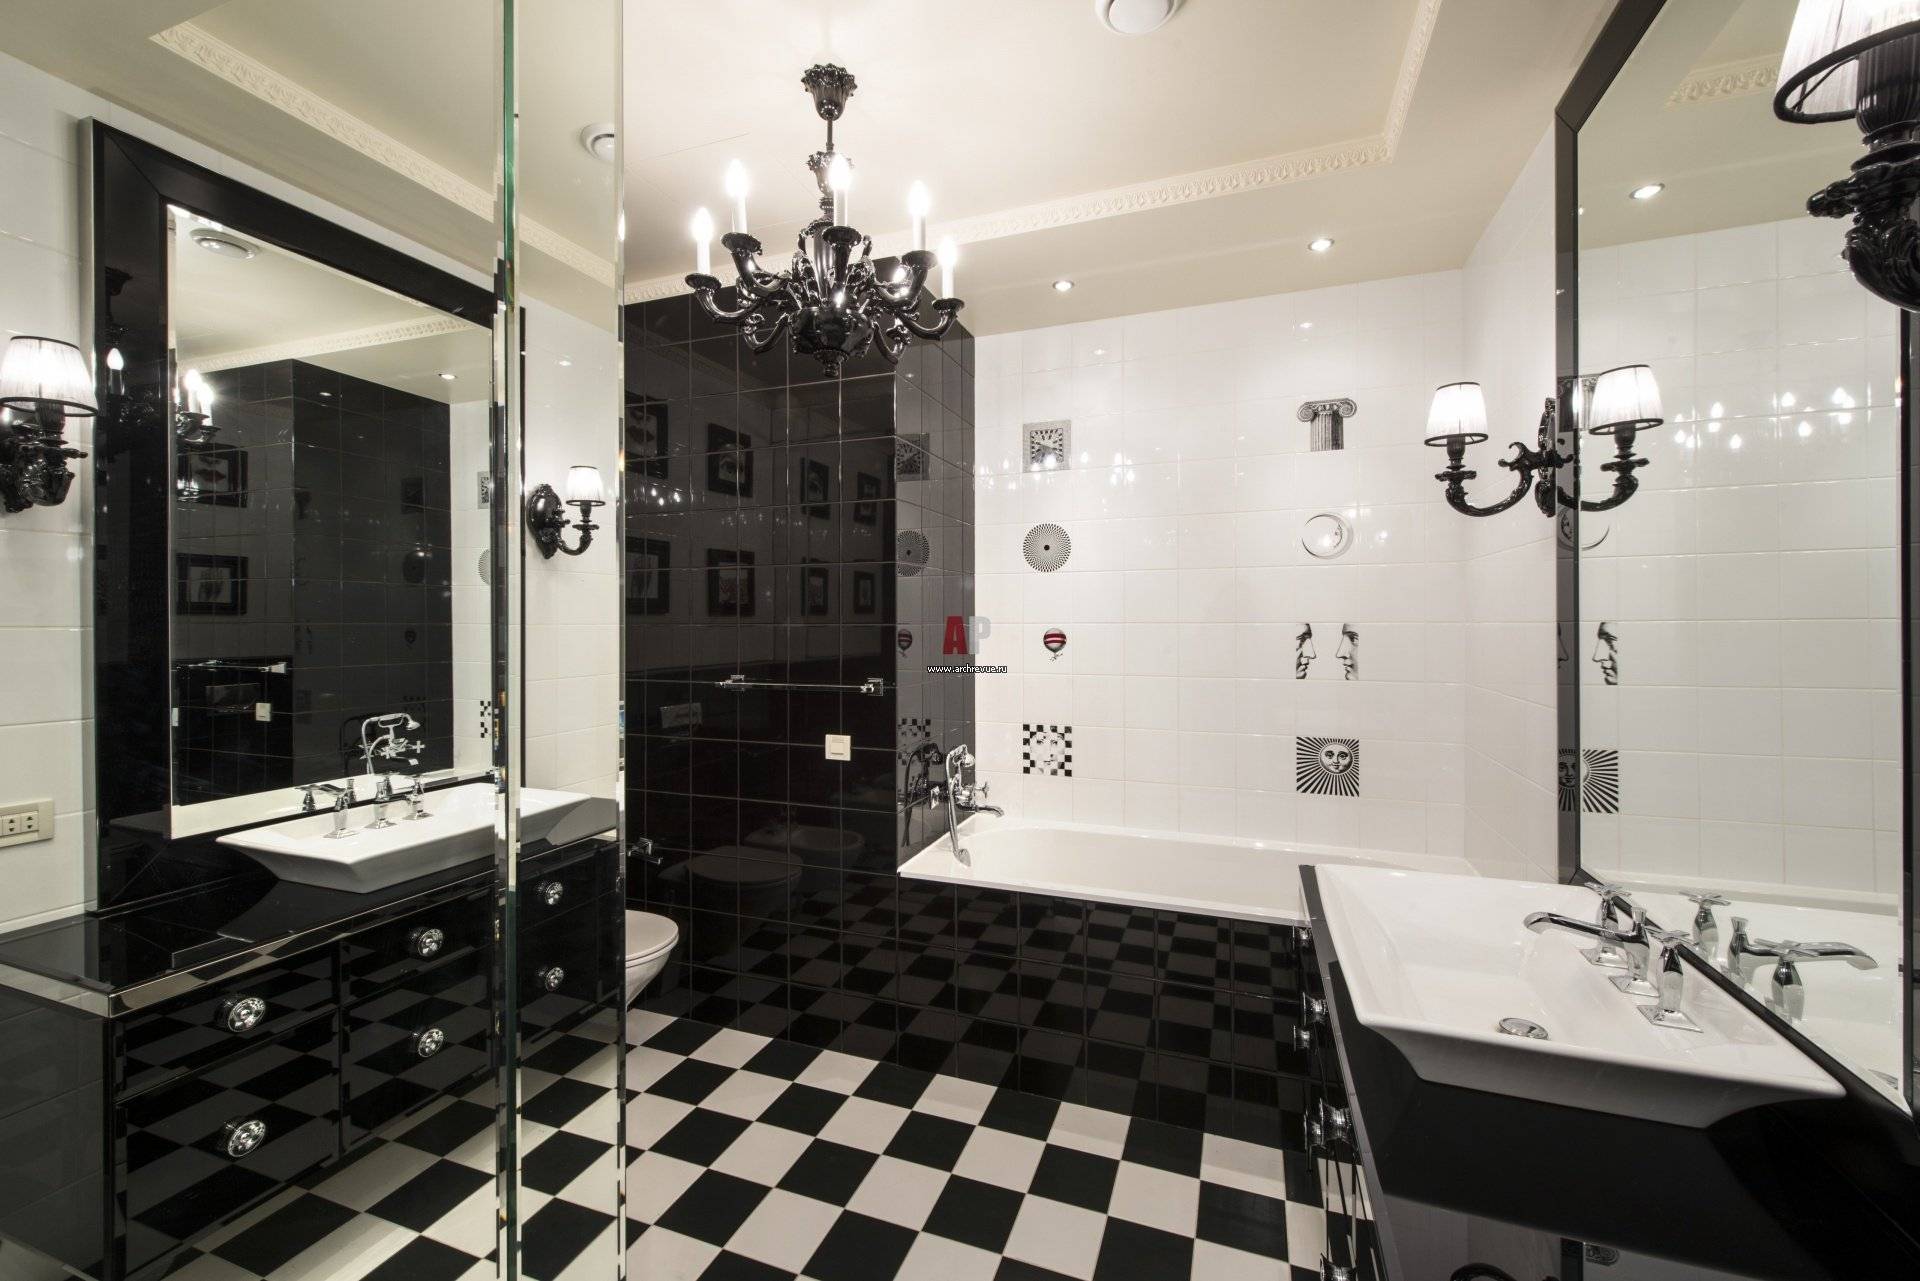 Ванная комната черно-белая: особенности использования цветов